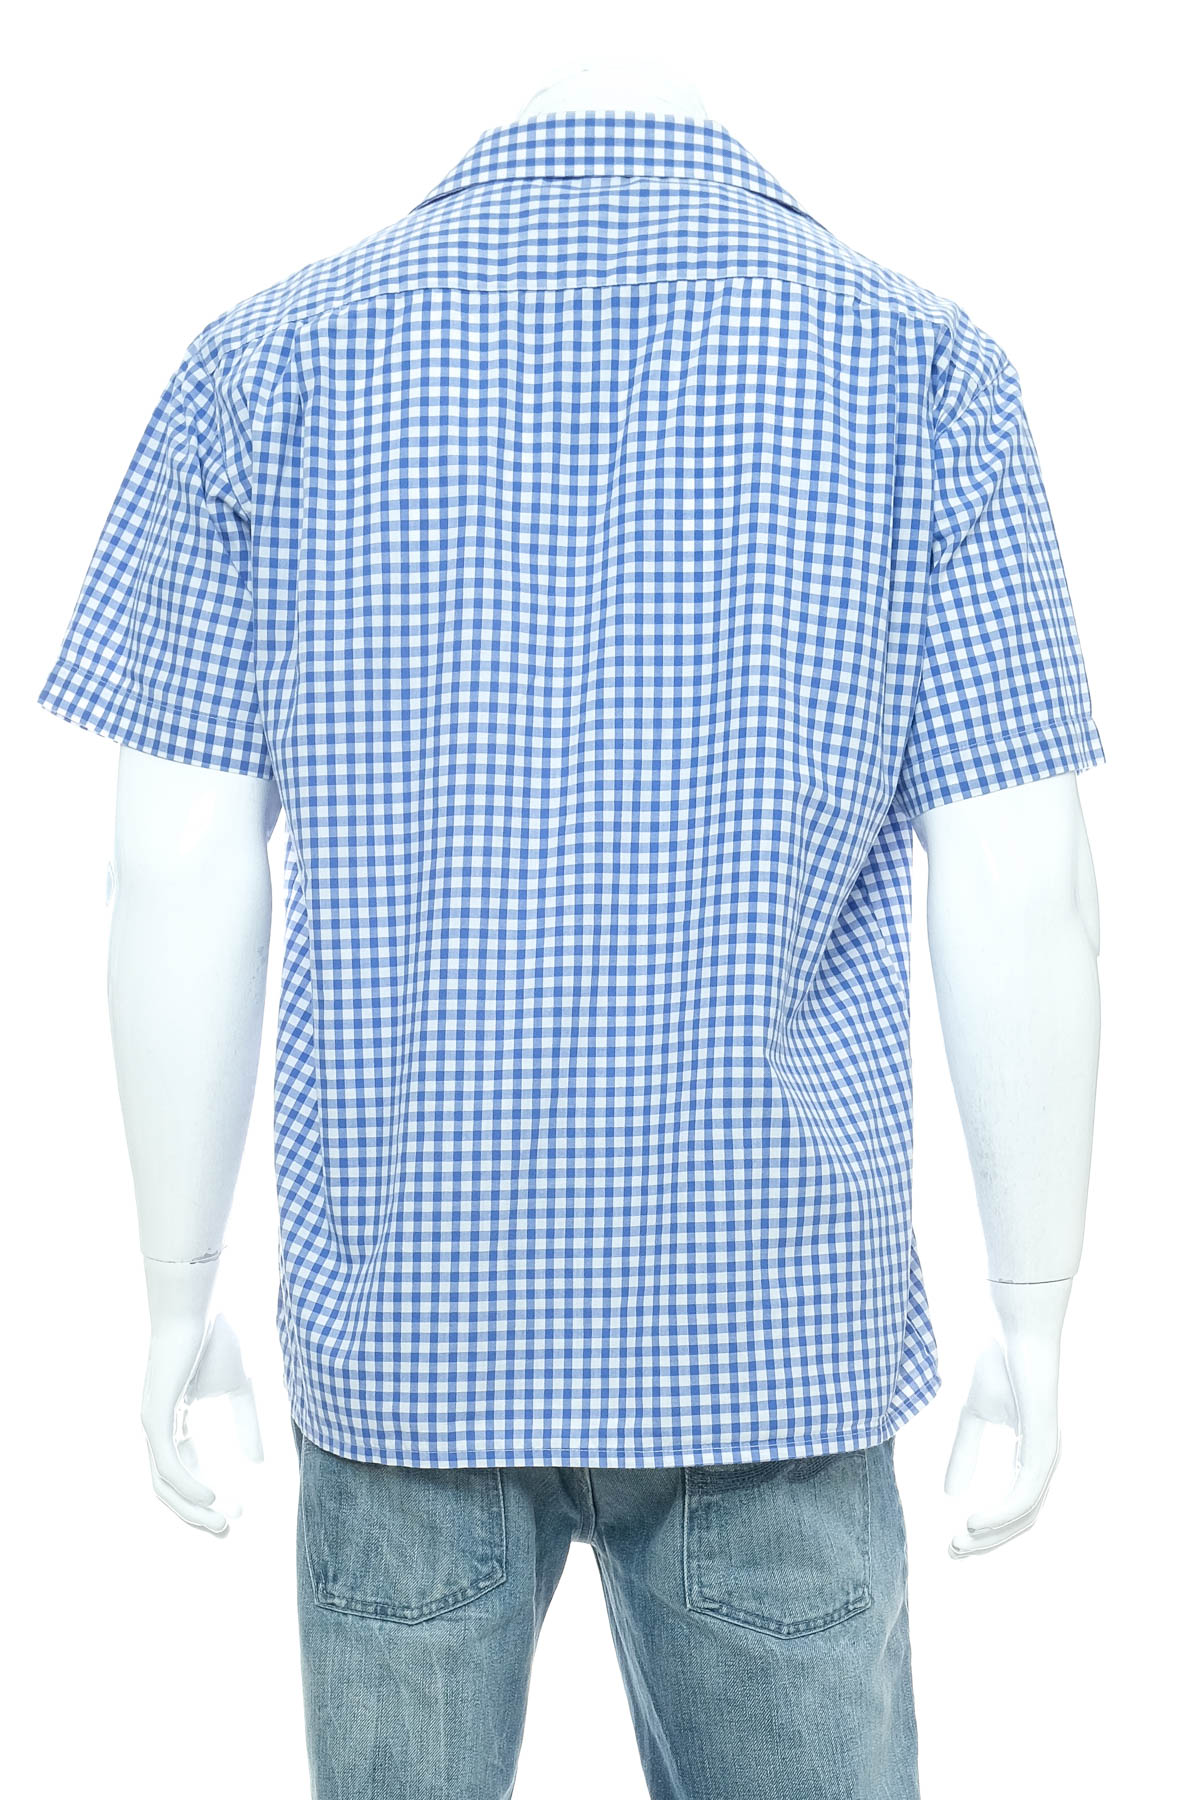 Ανδρικό πουκάμισο - OS Trachten - 1